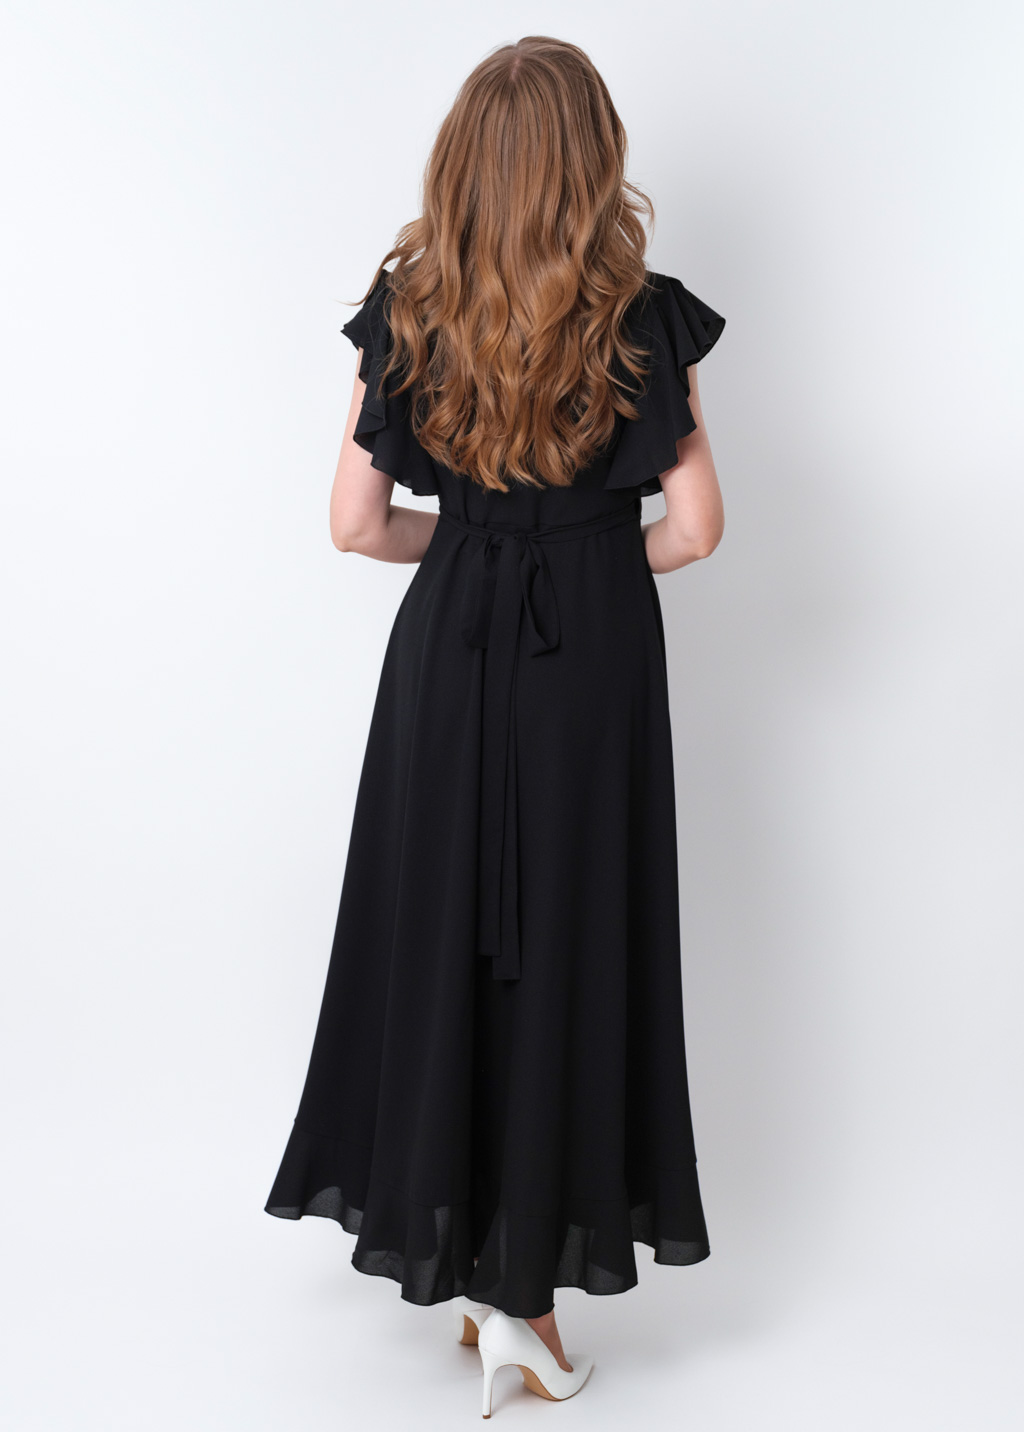 Black chiffon wrap dress